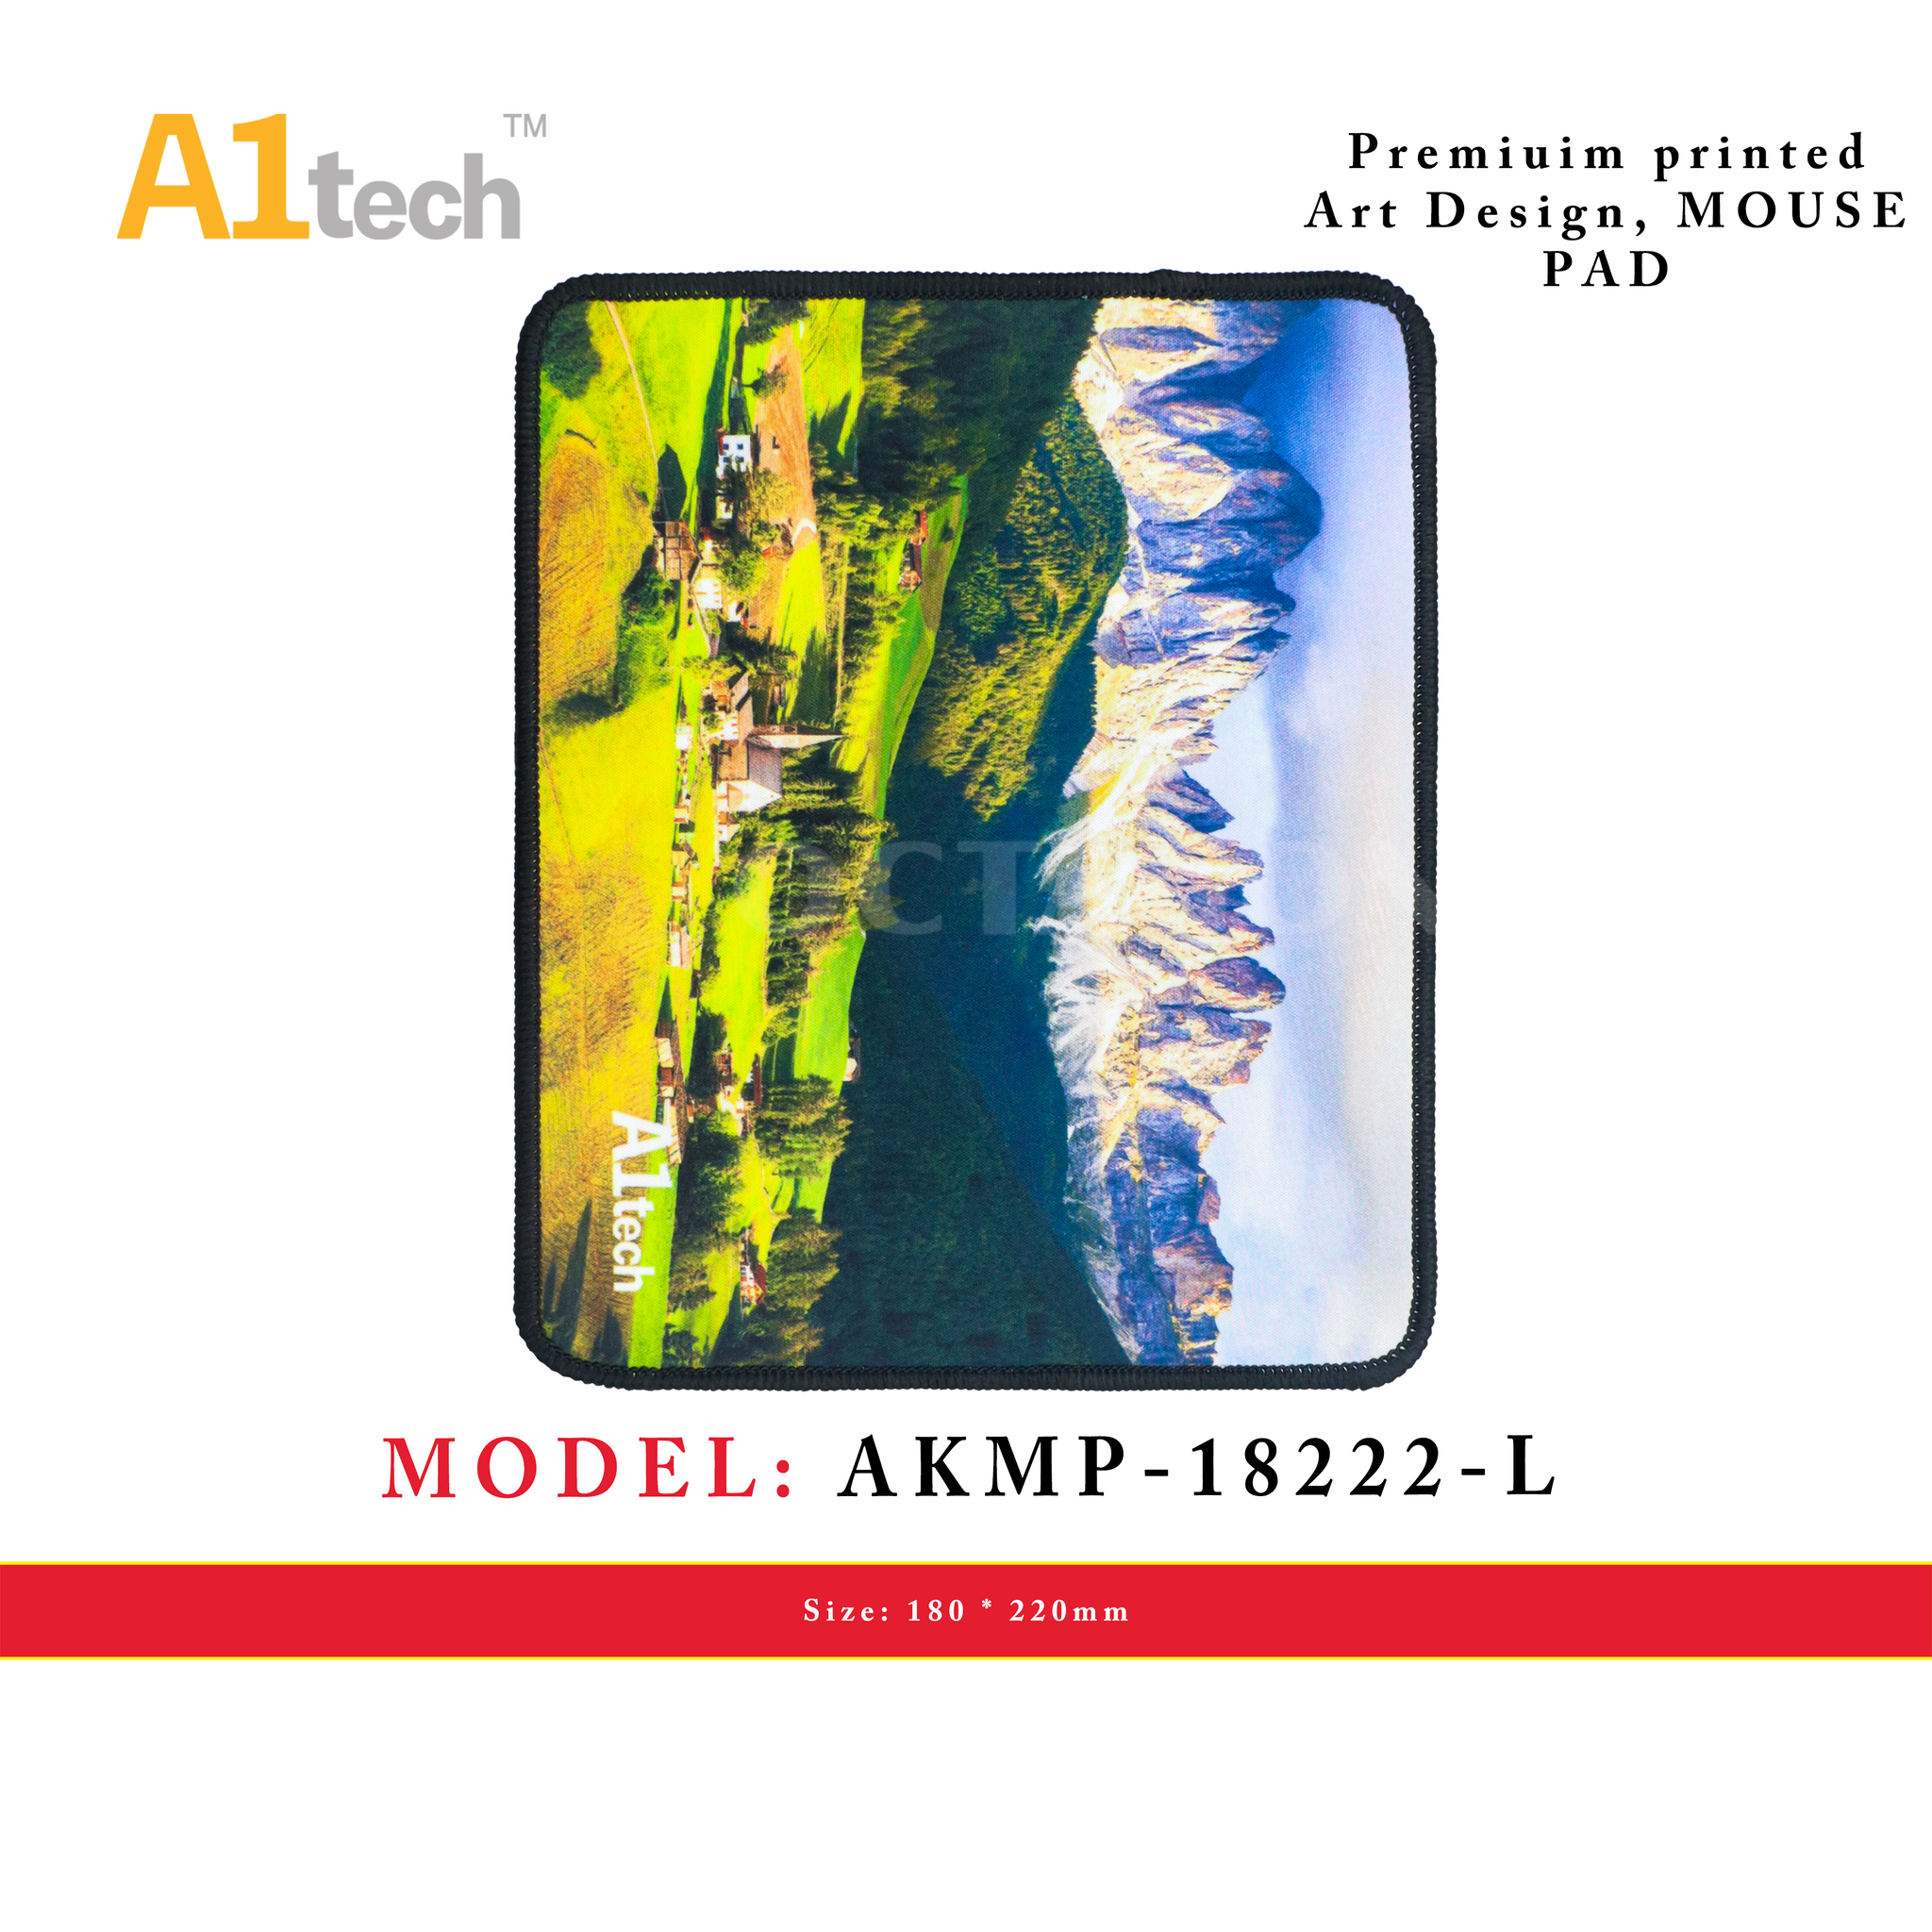 A1TECH AKMP-18222-L MOUSE PAD